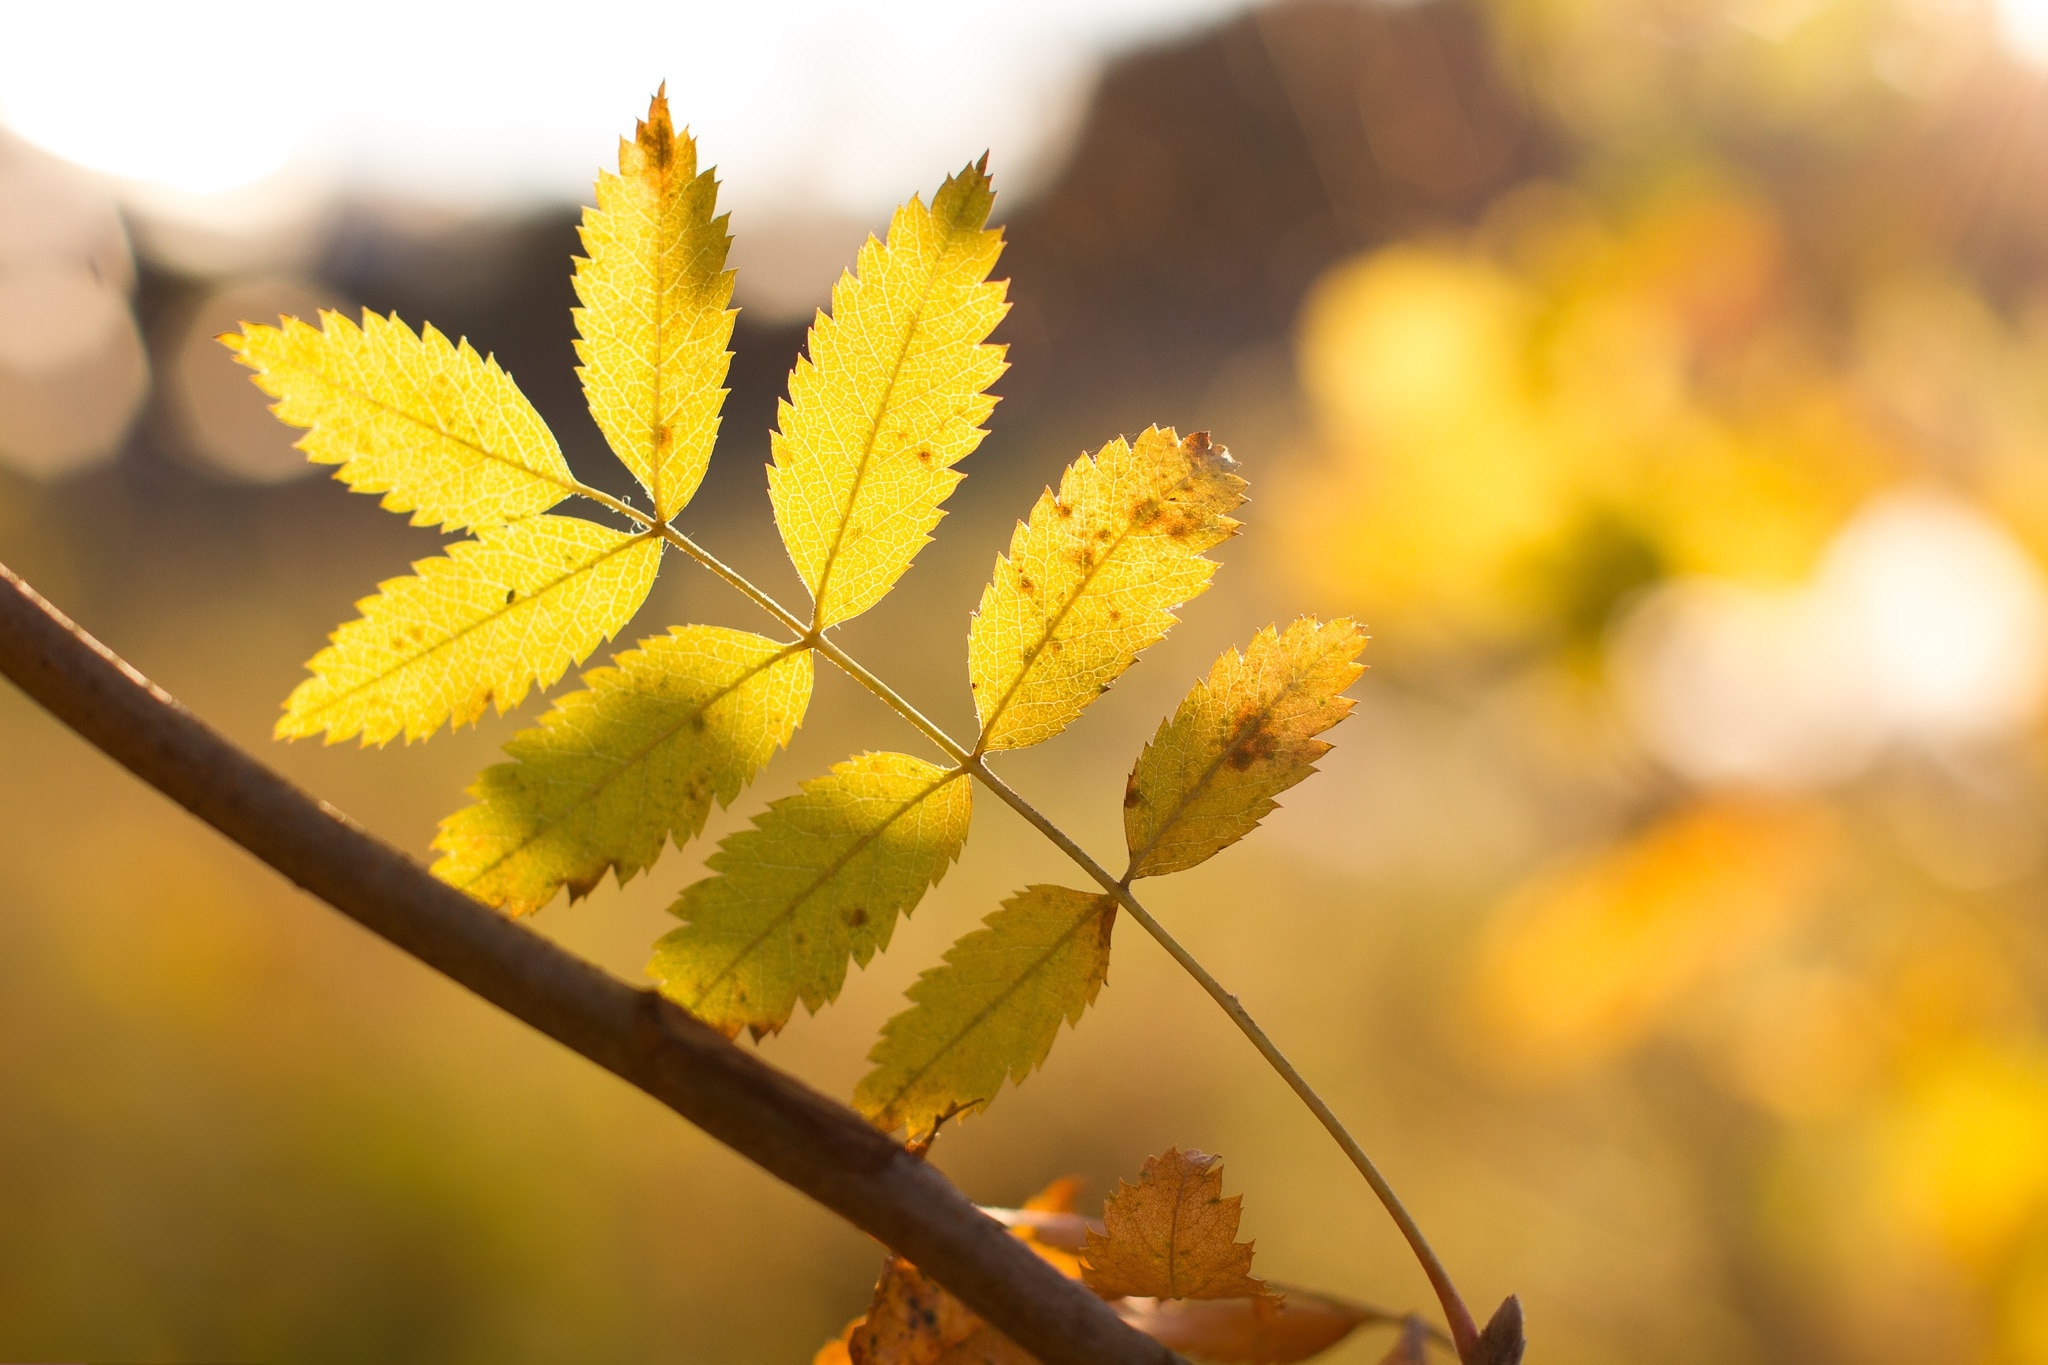 Foliage, Sunny, Autumn, Autumn Leaves, leaf, close-up